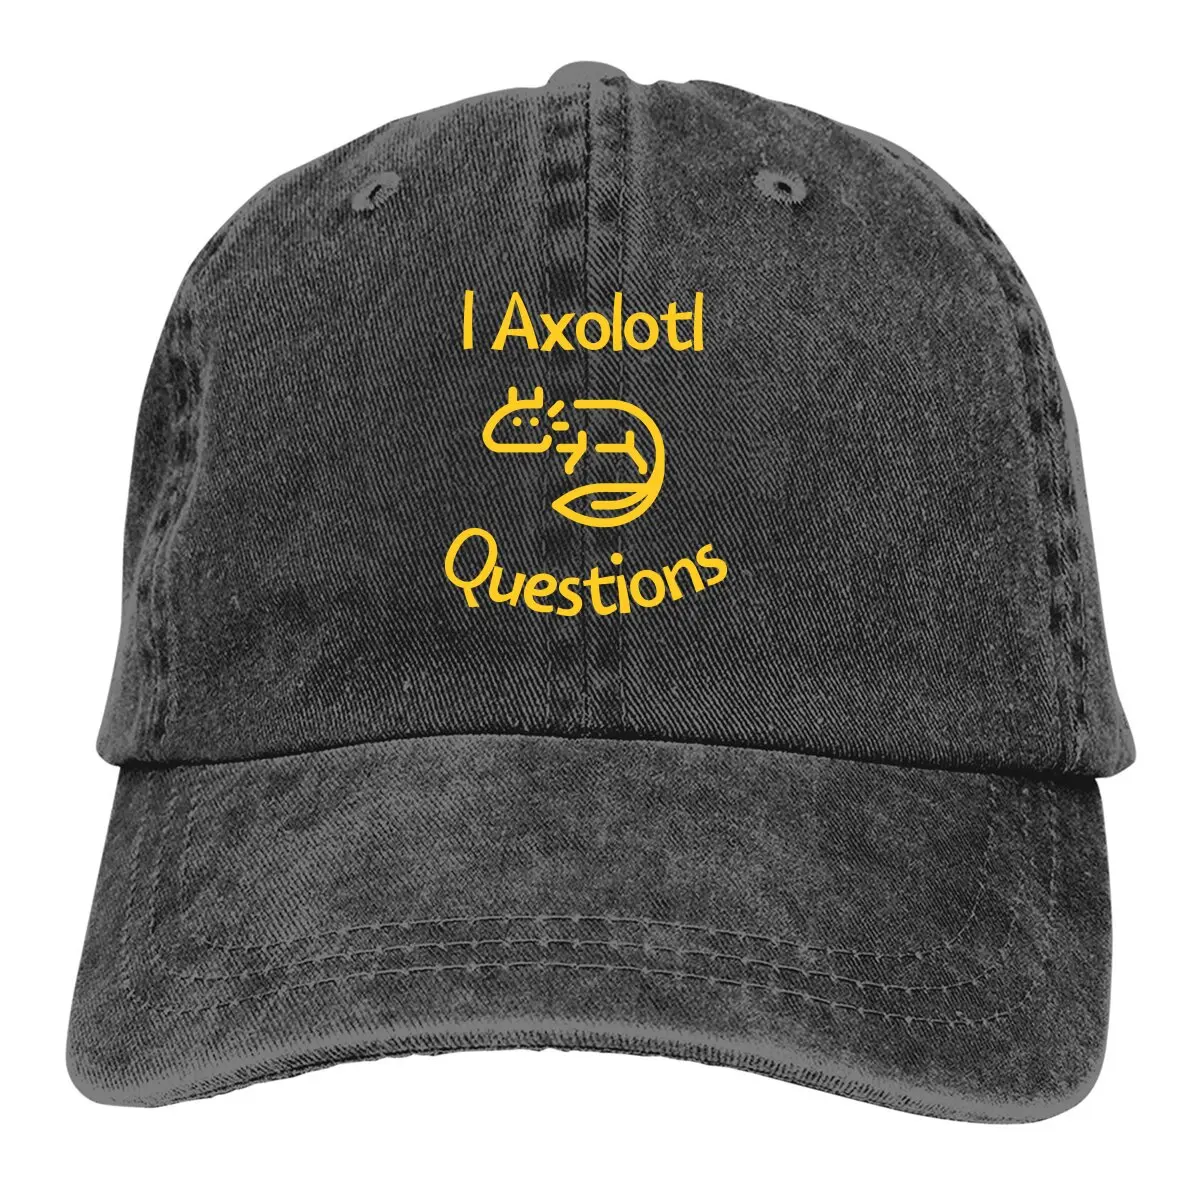 

Бейсболка с рисунком I Axolotl на тему вопросов, мужские и женские головные уборы, Снэпбэк кепки для влюбленных Axolotl с защитой козырька